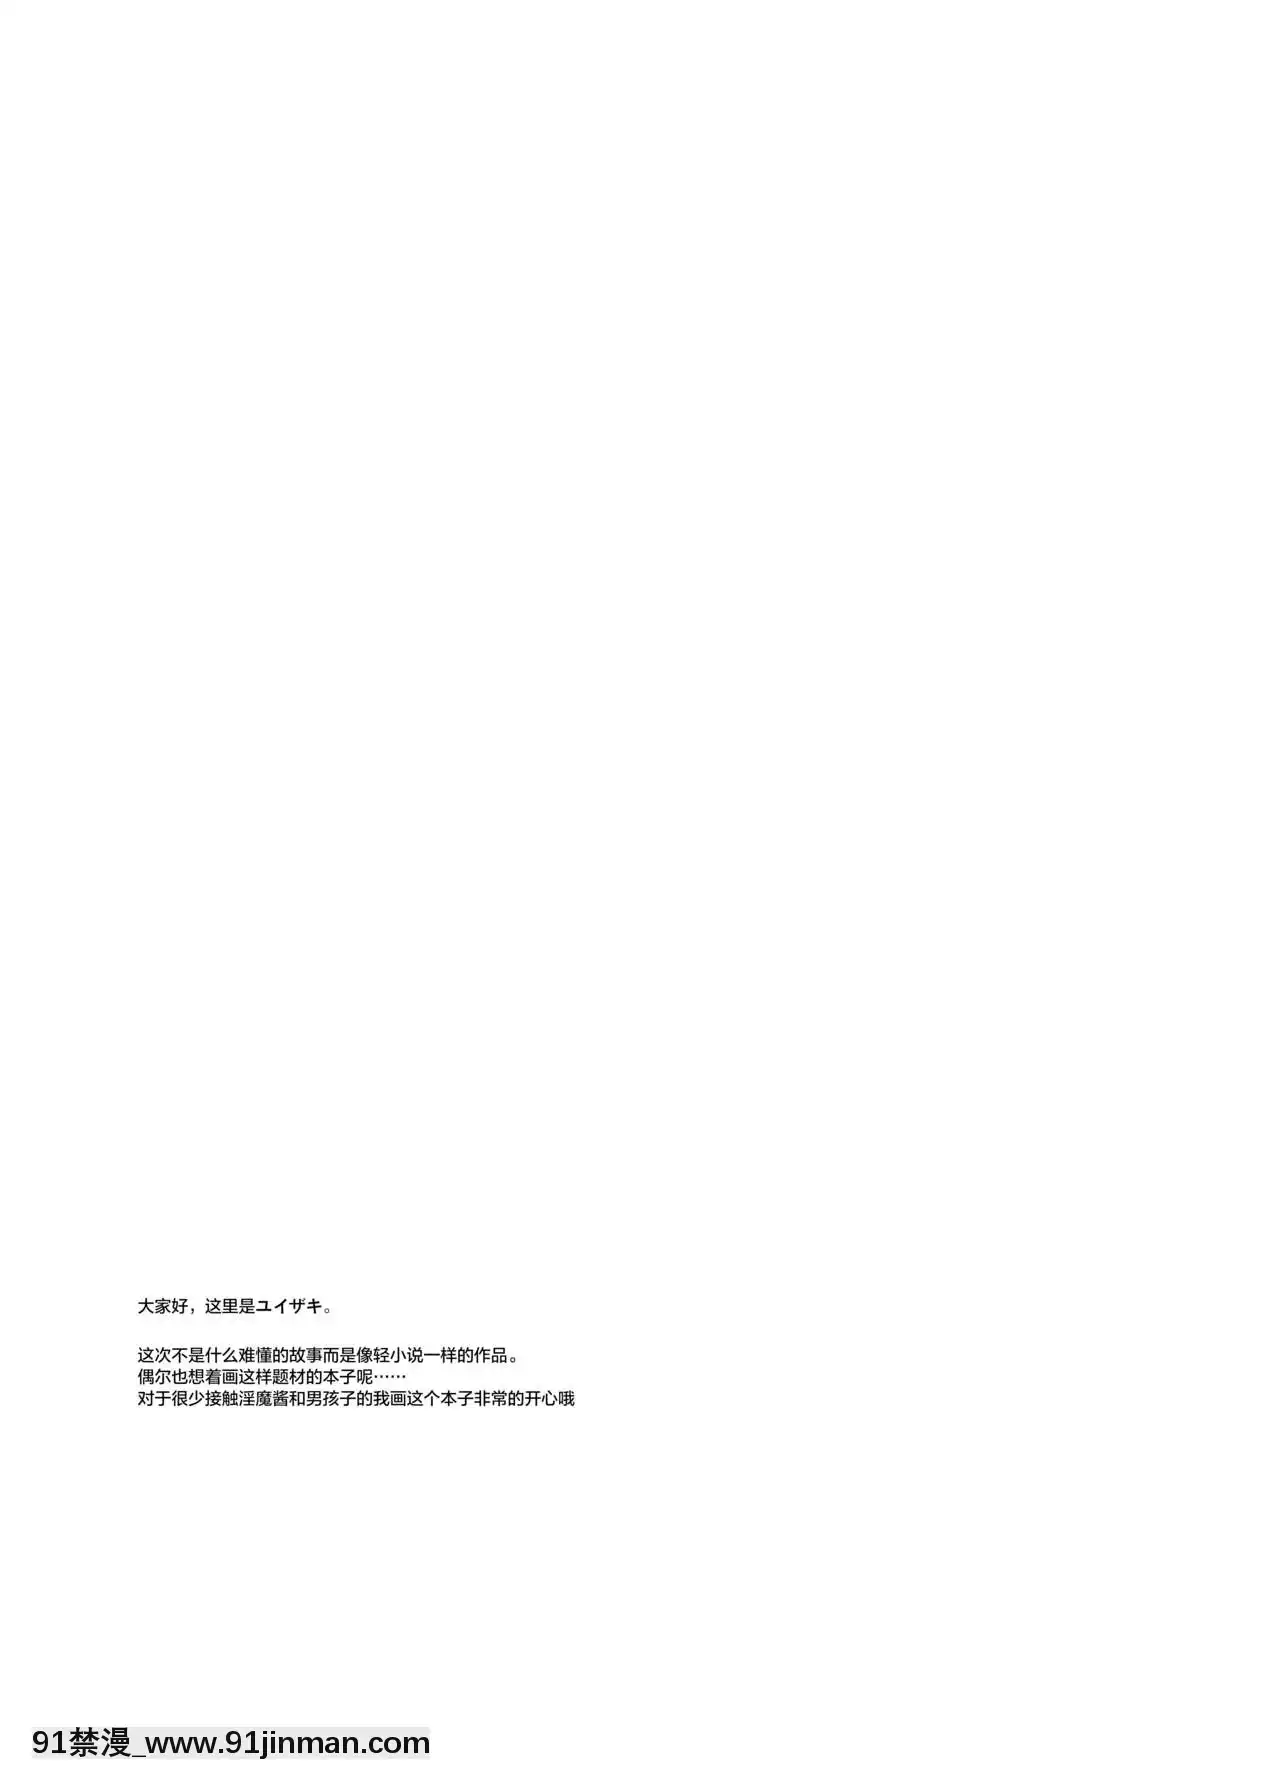 [Tiếng Trung] [Người nghiện ca cao (Kazuya Yuizaki)] Thế giới khác nhau x Quỷ vương x Succubus [Kỹ thuật số]【truyện tranh huyền huyễn tiên hiệp】